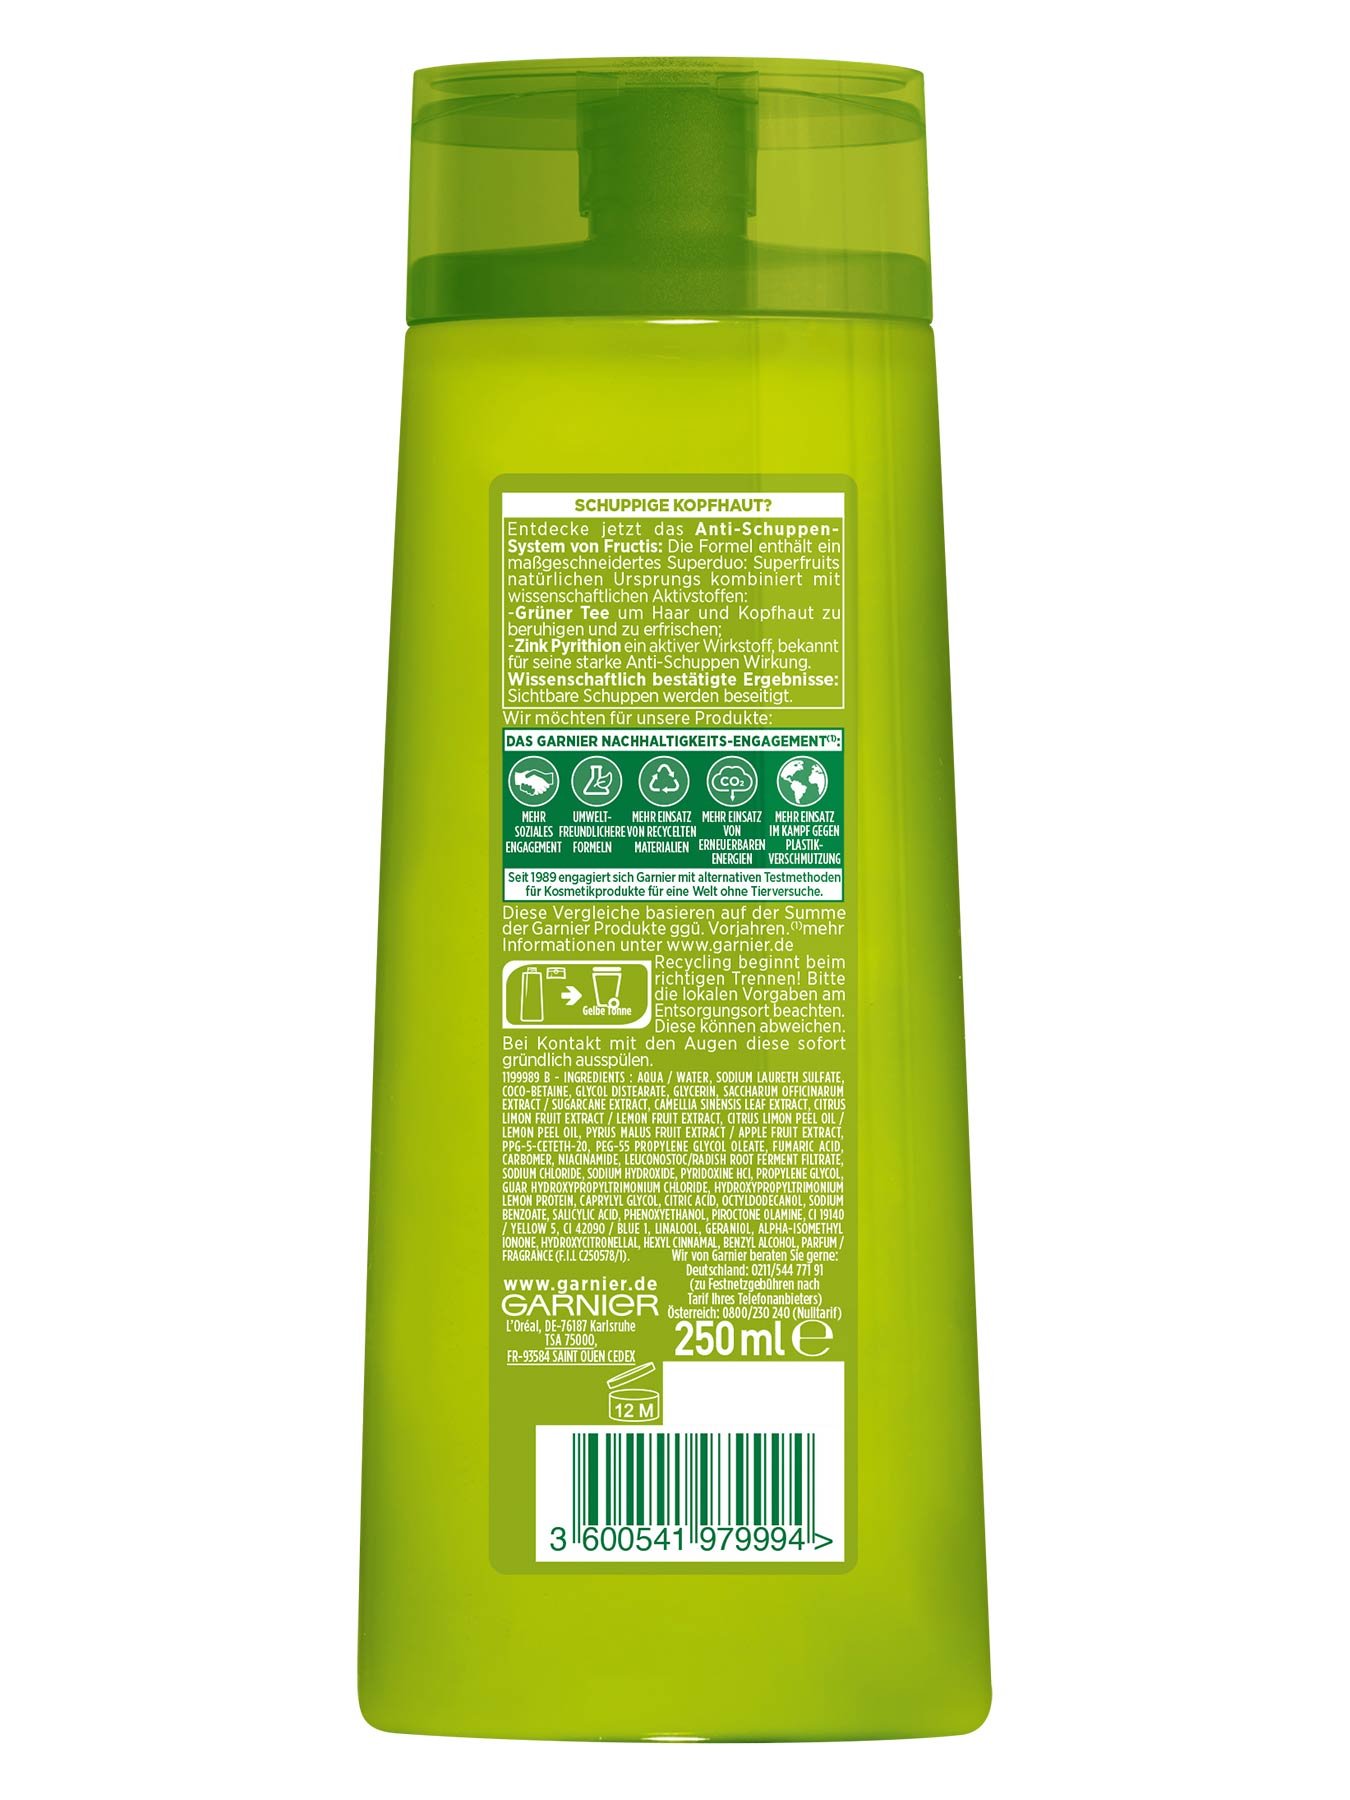 Kraeftigendes-Shampoo-Fructis-Pure-Volume-250ml-Rueckseite-Garnier-Deutschland-gross